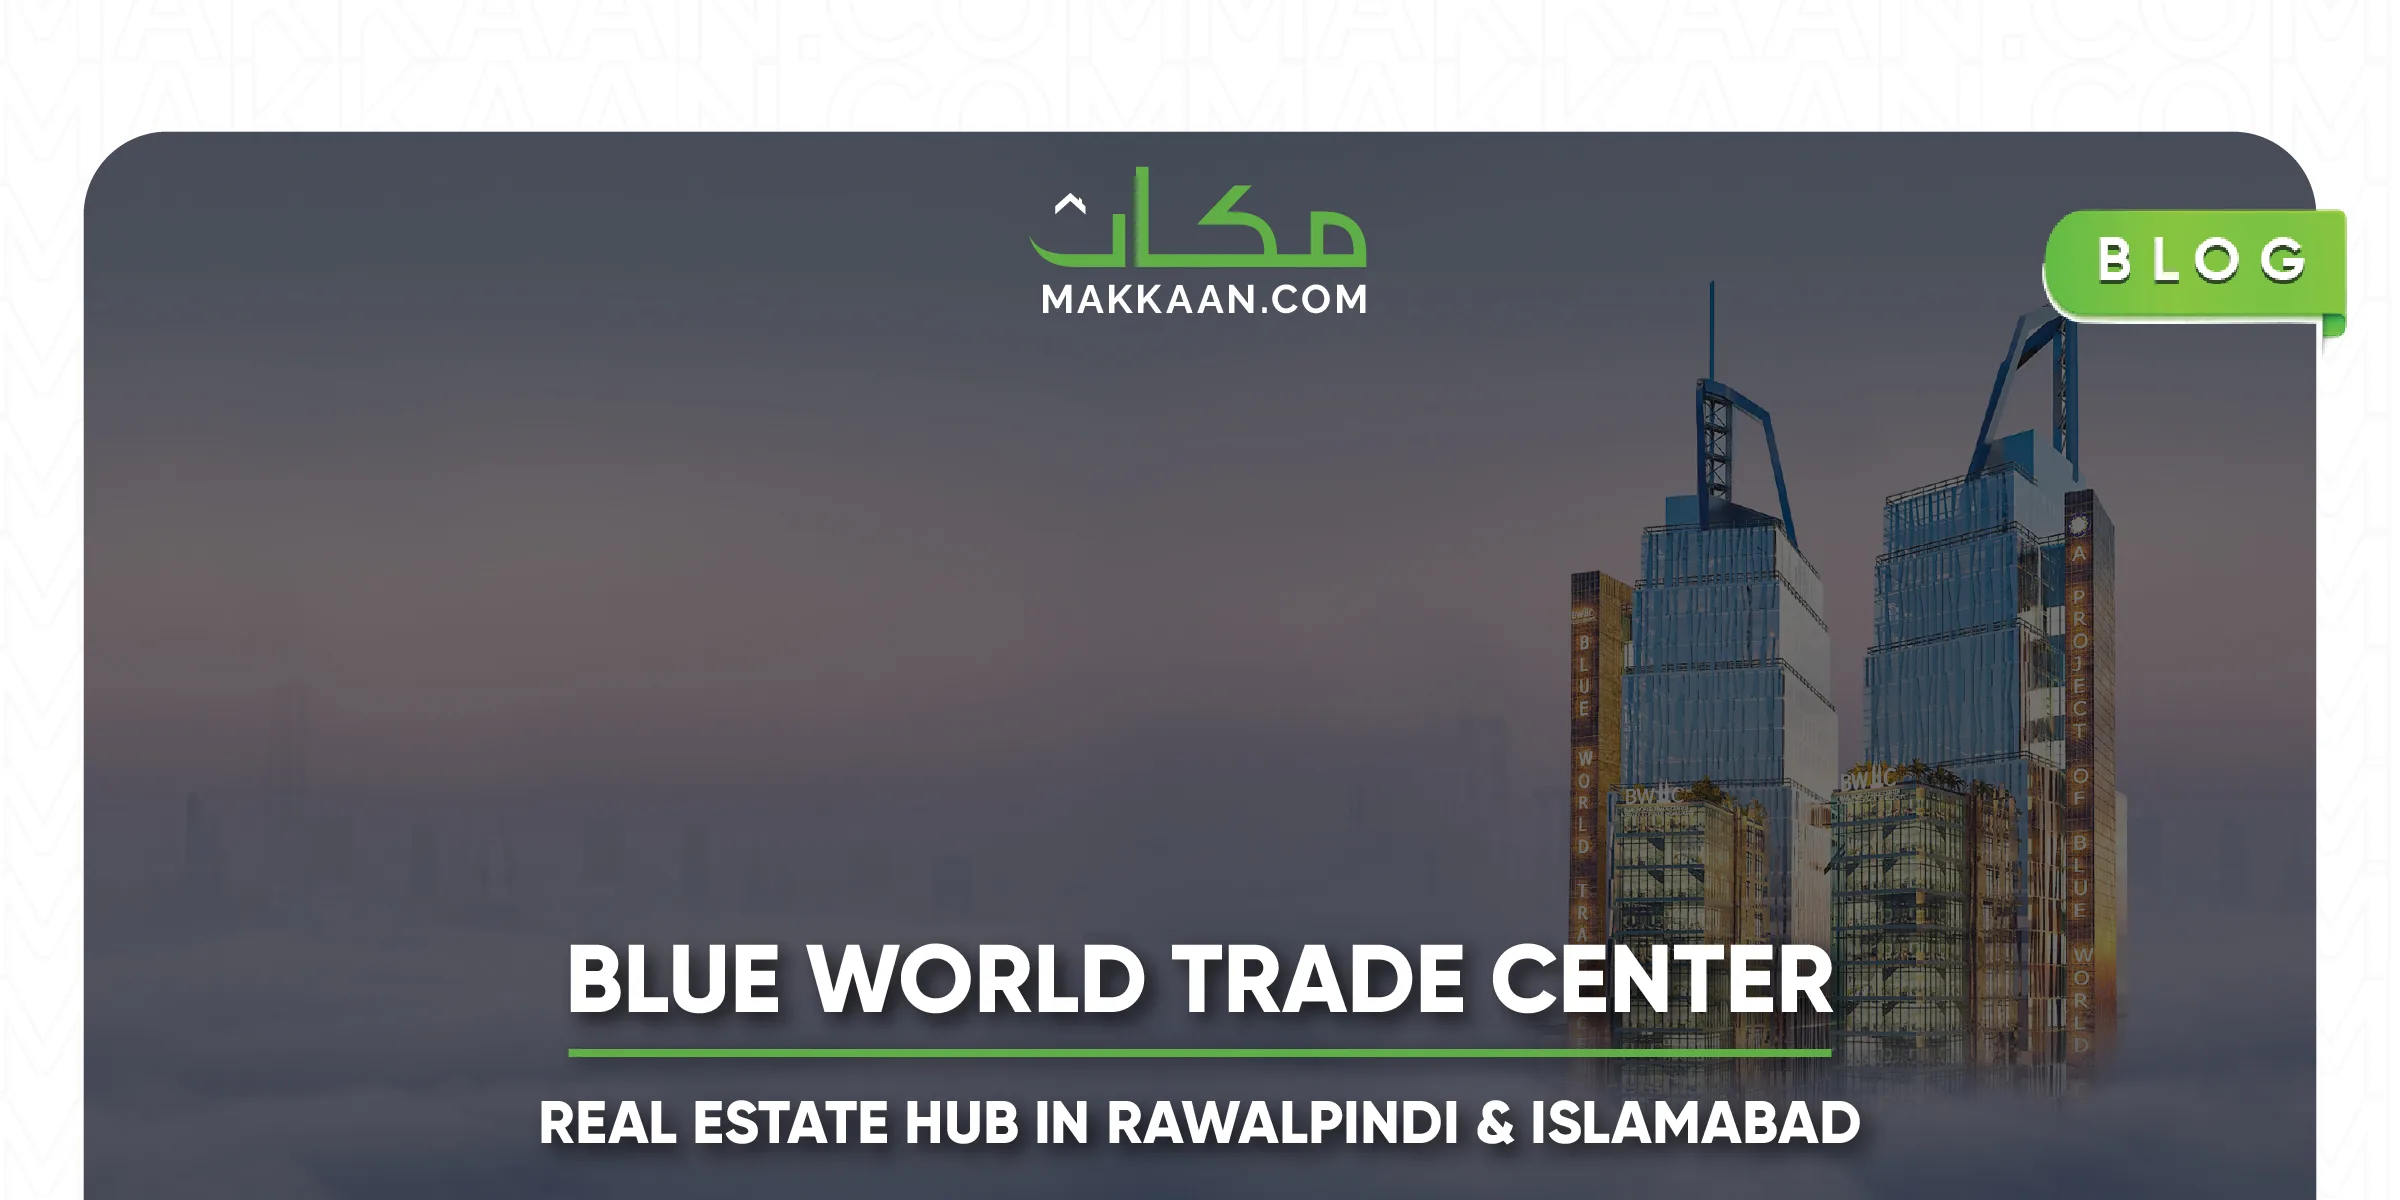 bwtc a real estate hub in rawalpindi & Islamabad